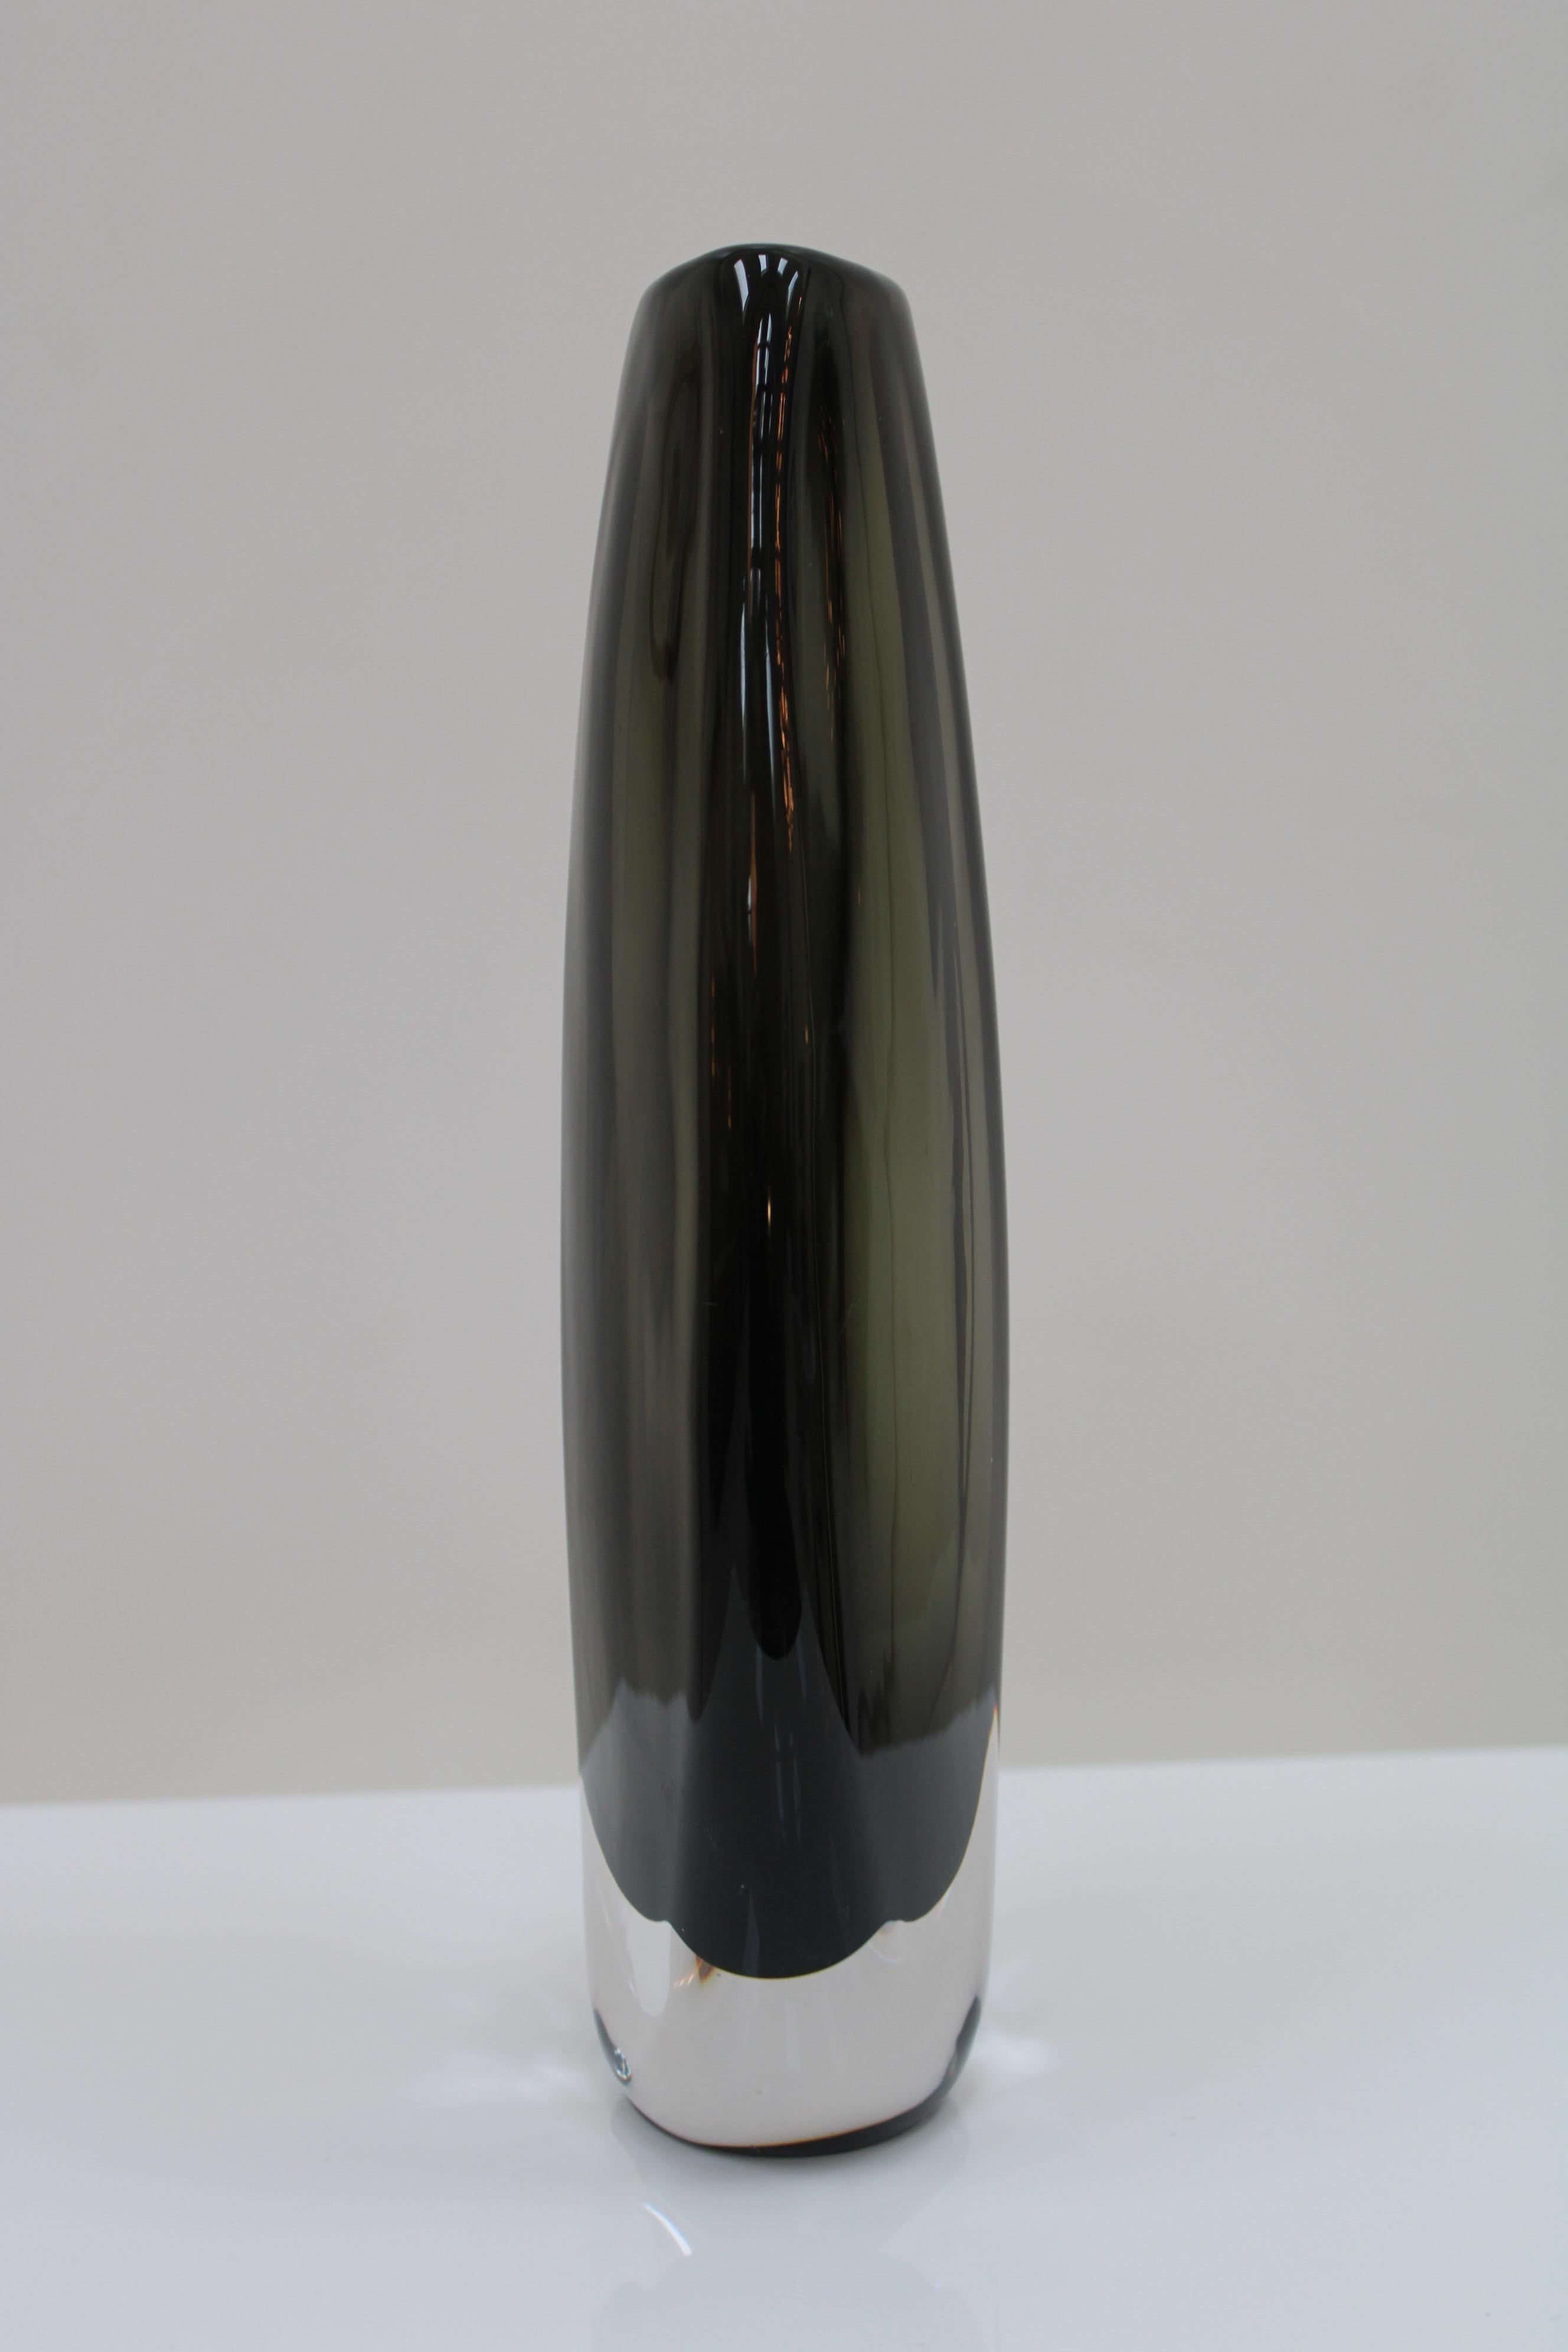 Swedish Midcentury Black Sommerso Murano Glass Vase by Nils Landberg for Orrefors 1960 For Sale